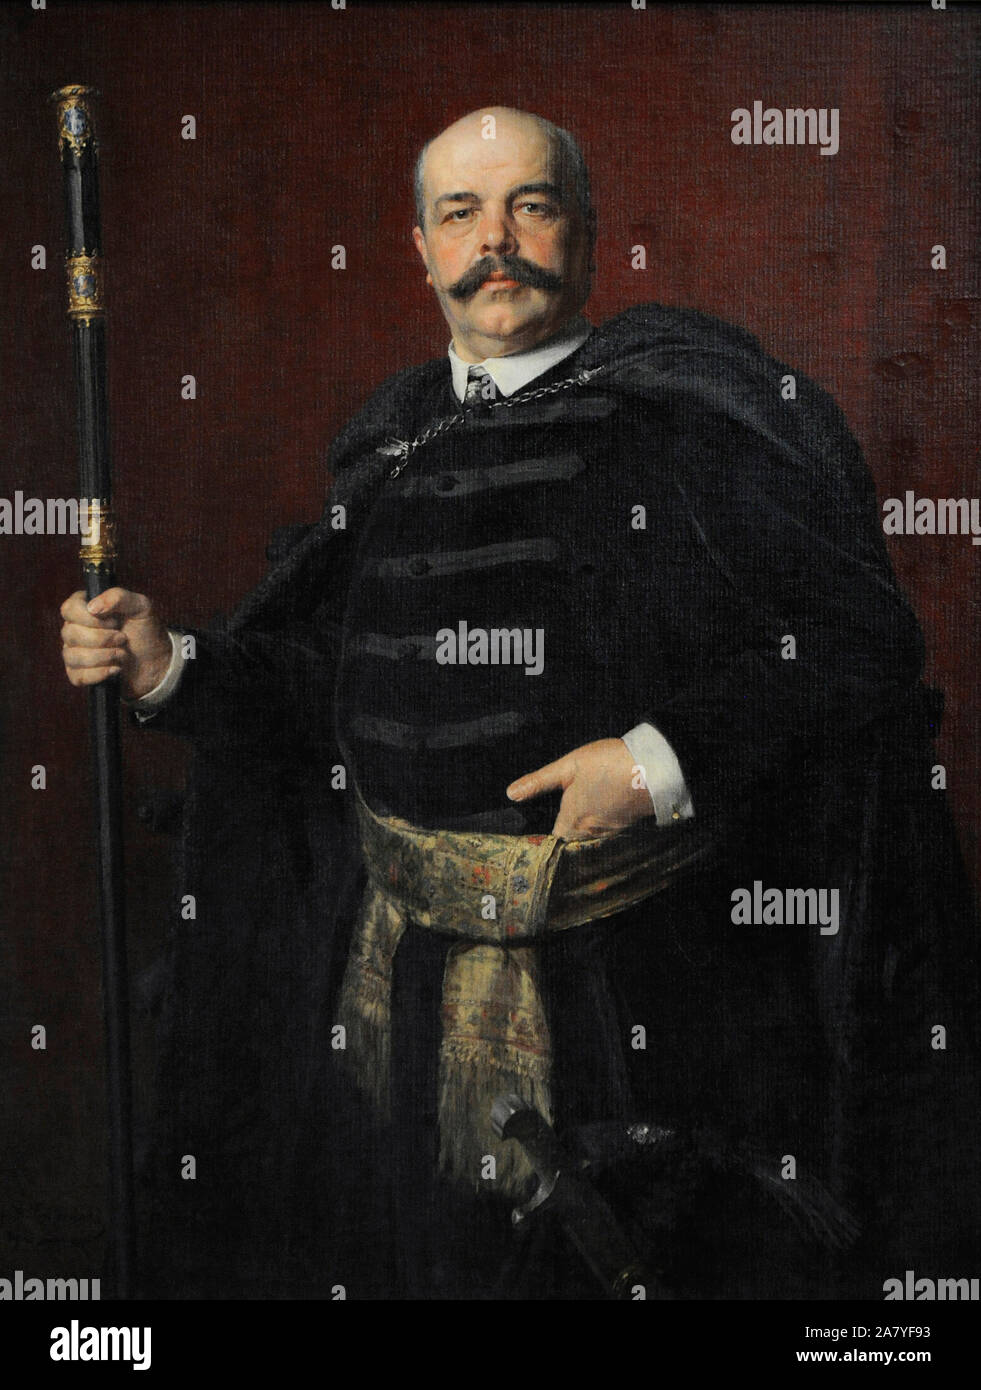 Stanislaw Marcin Badeni (1850-1912). Polish politician. Portrait by Kazimierz Pochwalski (1855-1940), 1903. 19th Century Polish Art Gallery (Sukiennice Museum). National Museum of Krakow. Poland. Stock Photo